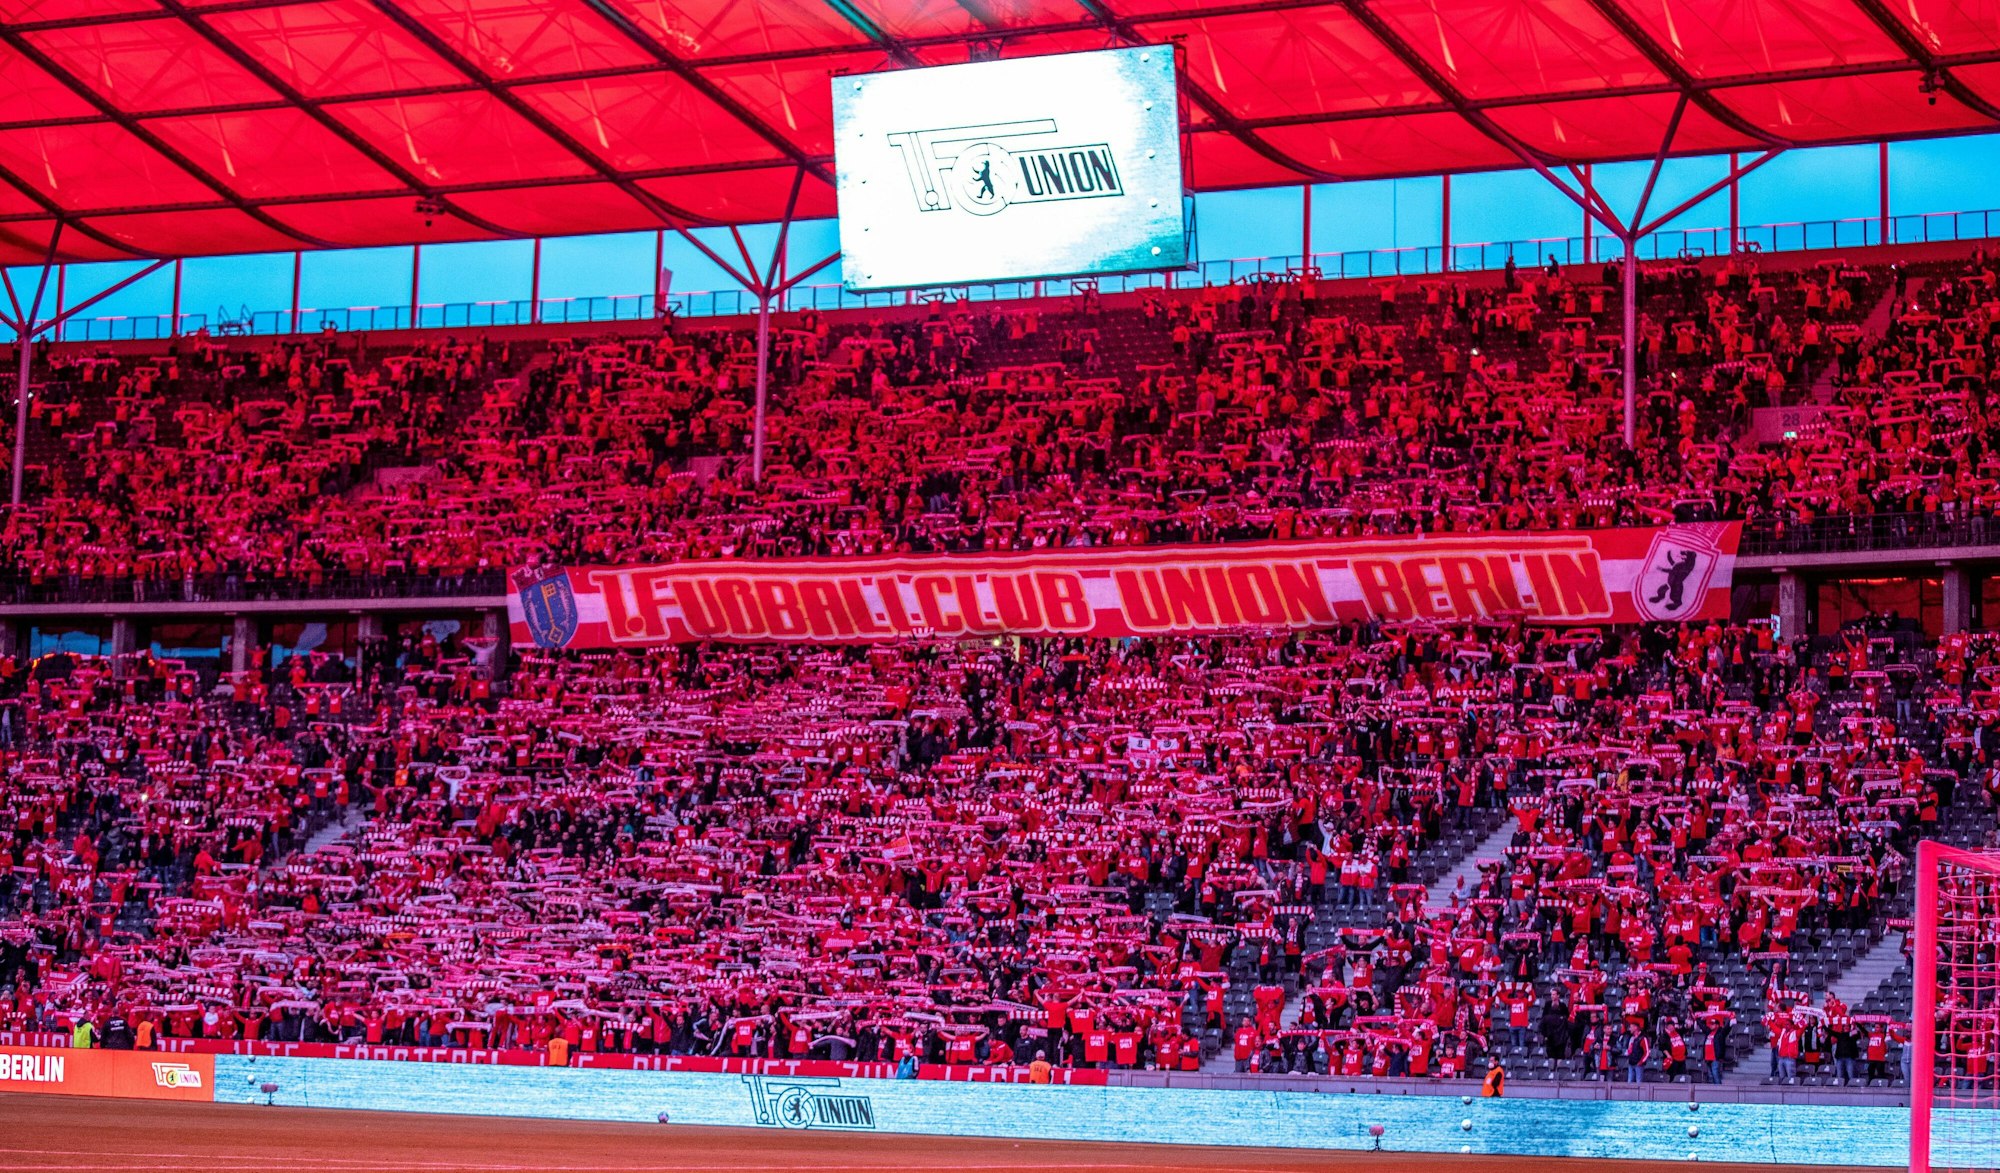 Das Olympiastadion erleuchtet zu Beginn des Spiels rot, der Vereinsfarbe des 1. FC Union Berlin.